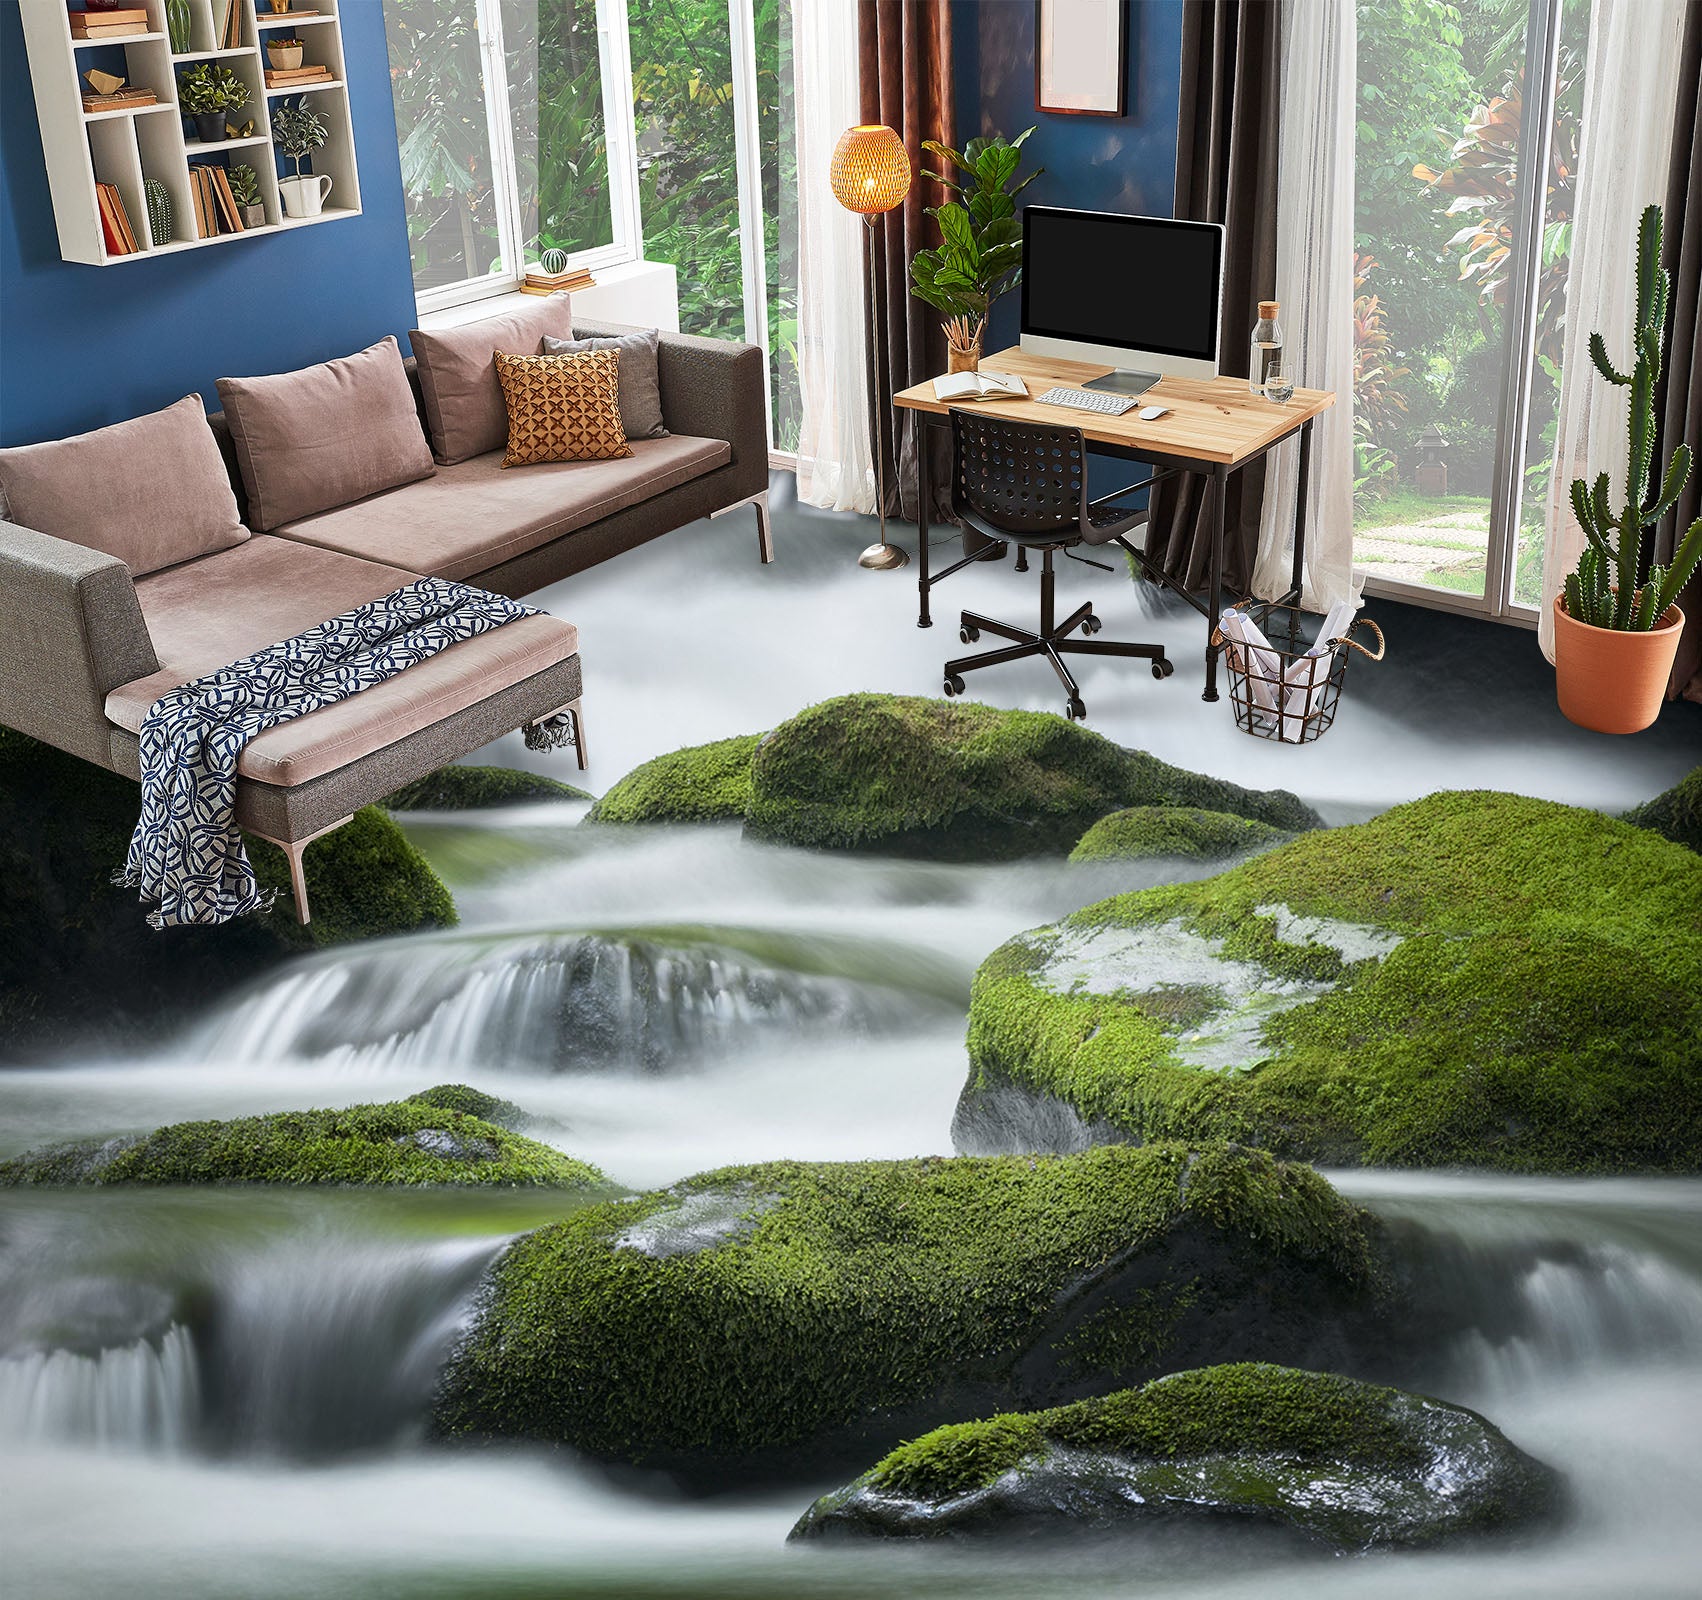 3D Moss And Running Water 523 Floor Mural  Wallpaper Murals Rug & Mat Print Epoxy waterproof bath floor